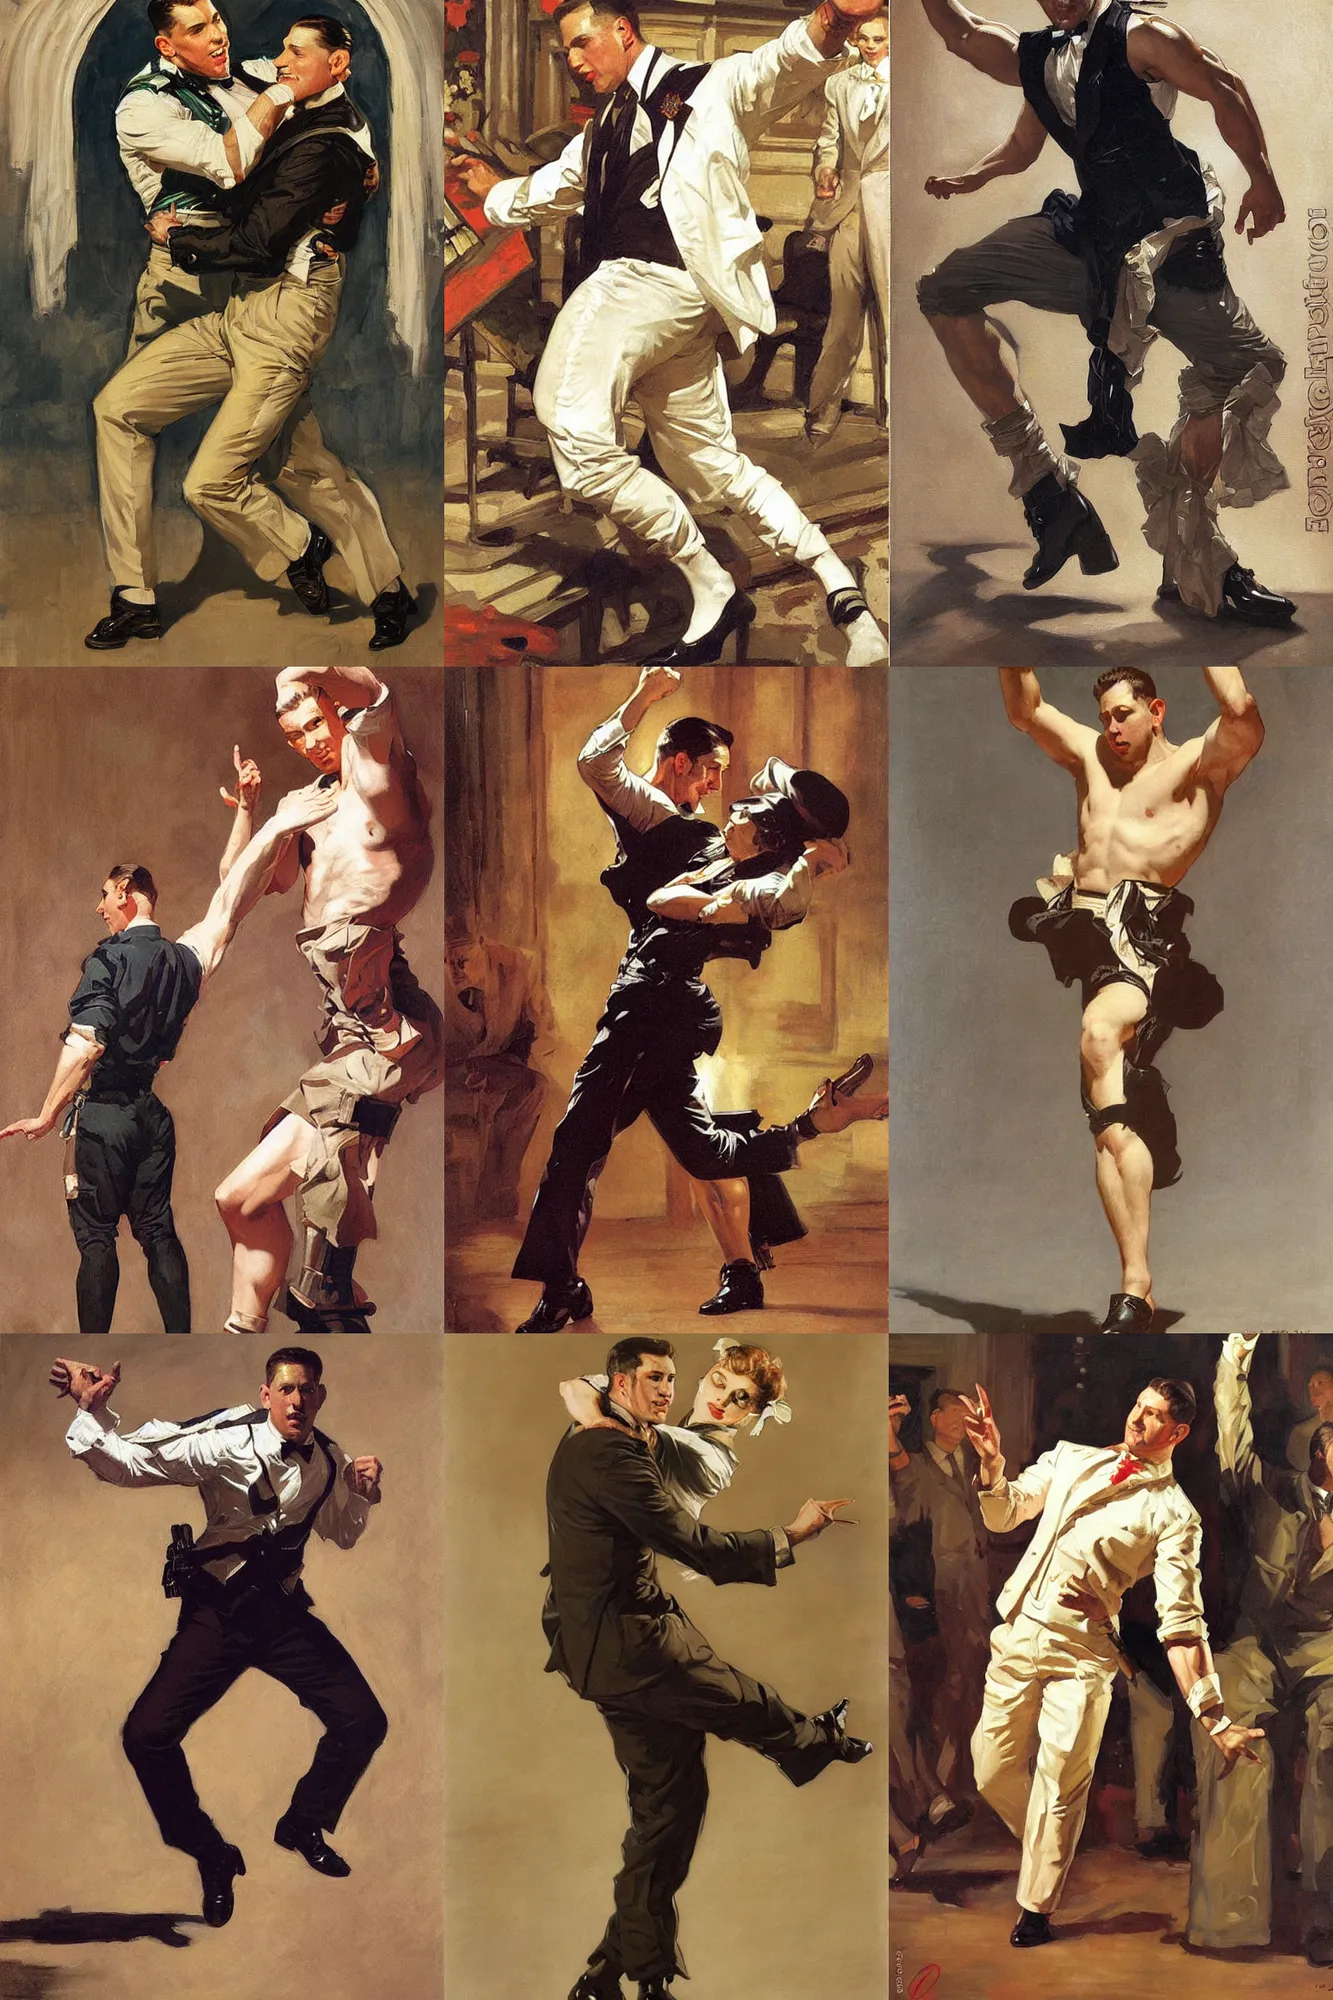 Prompt: chris redfield dancing, painting by j. c. leyendecker